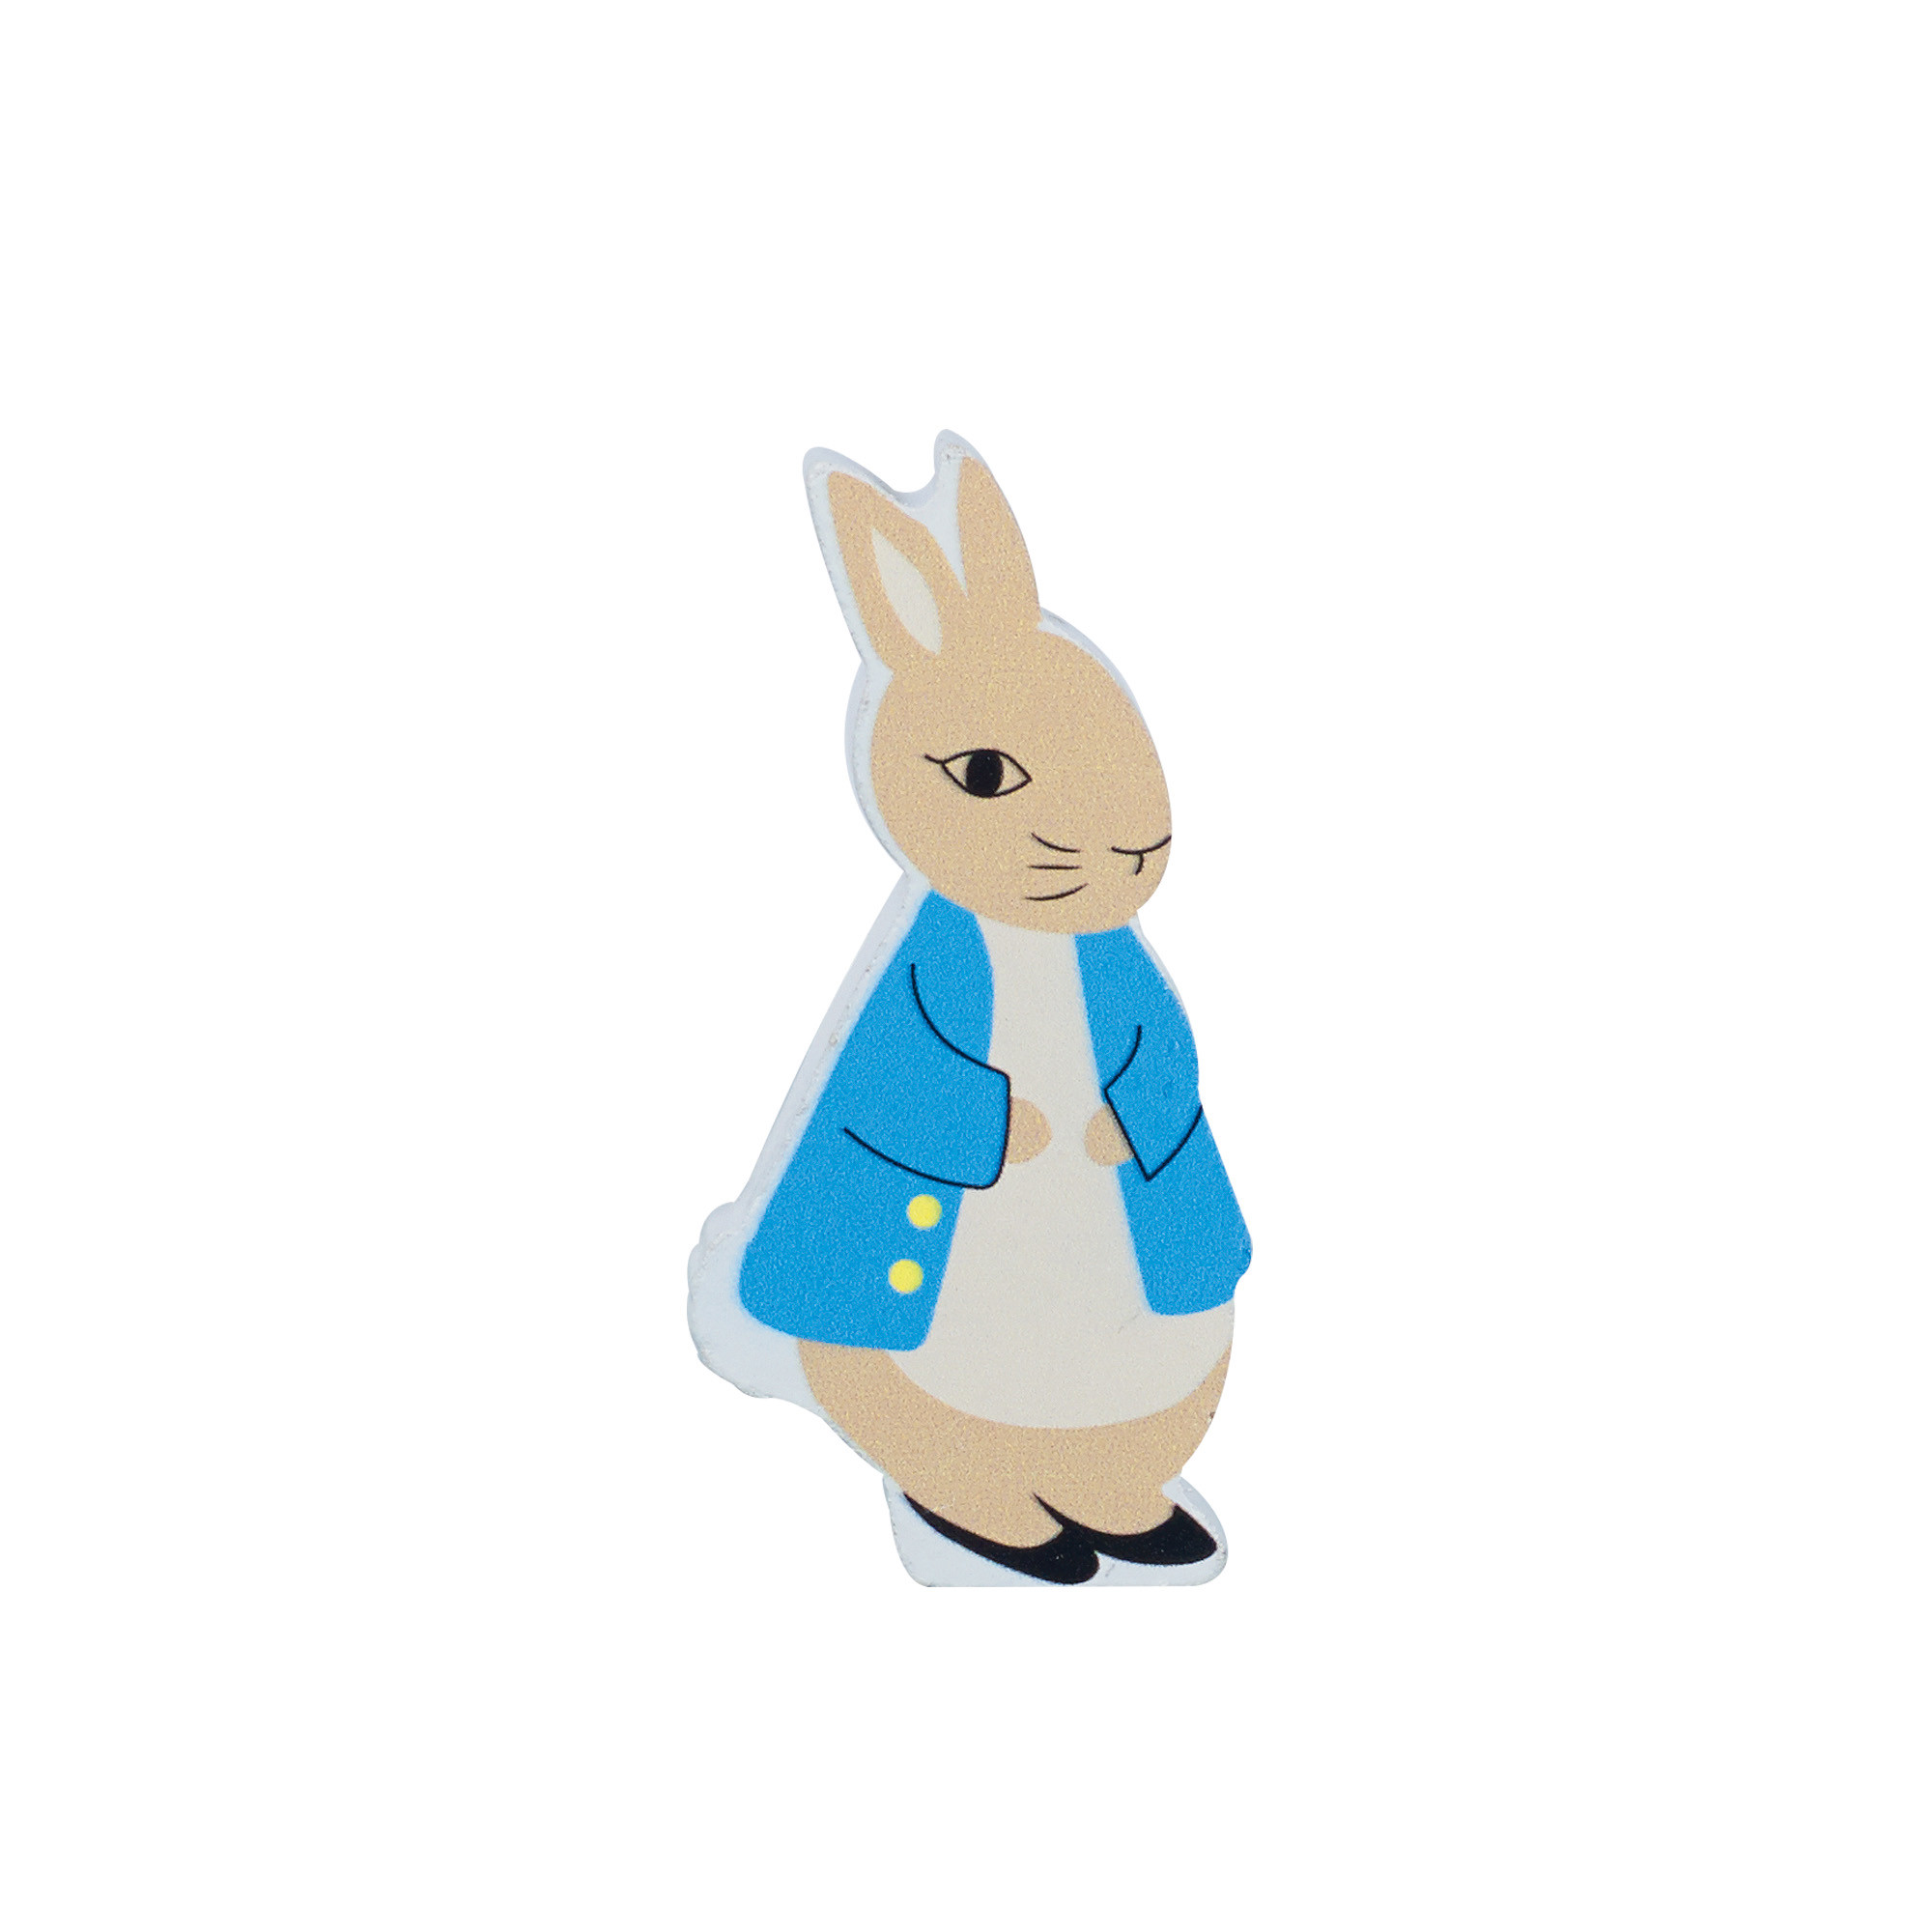 Peter Rabbit™ Wooden Character